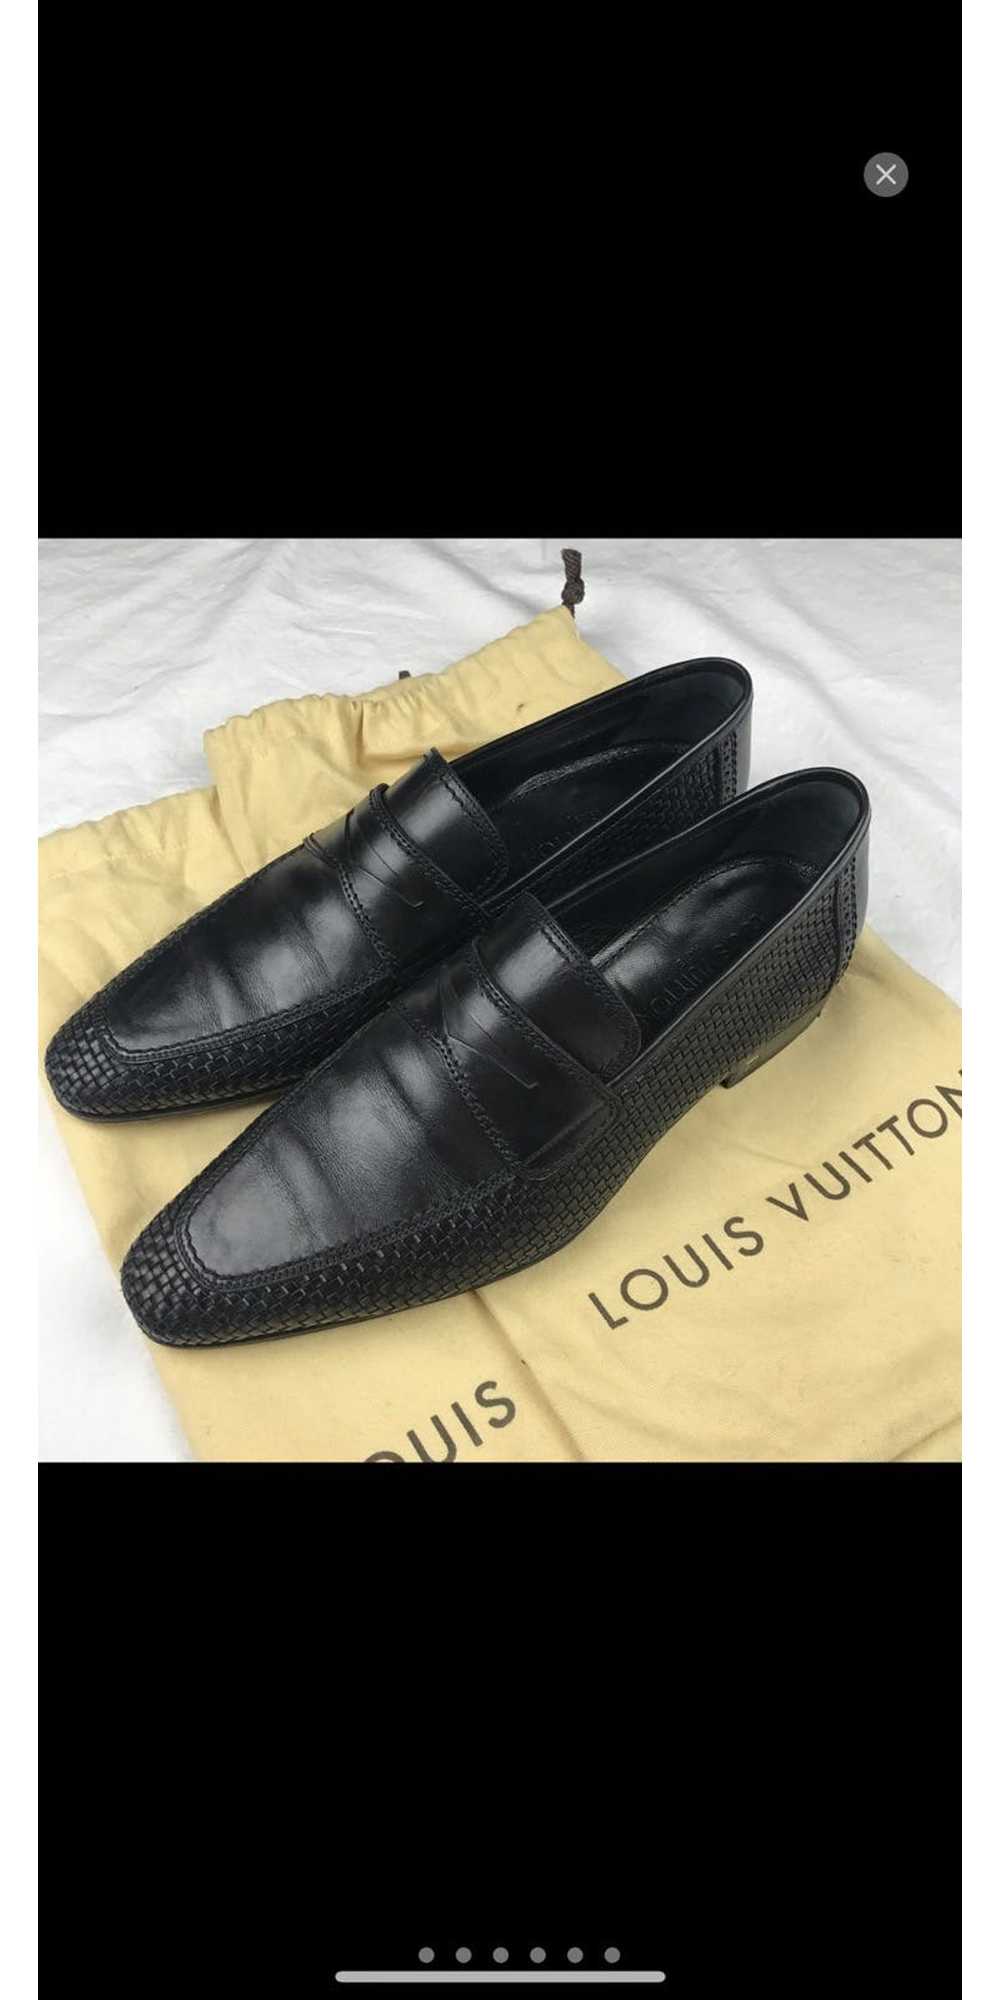 Louís Vuiton Formal Men's Leather Shoes - TRITY